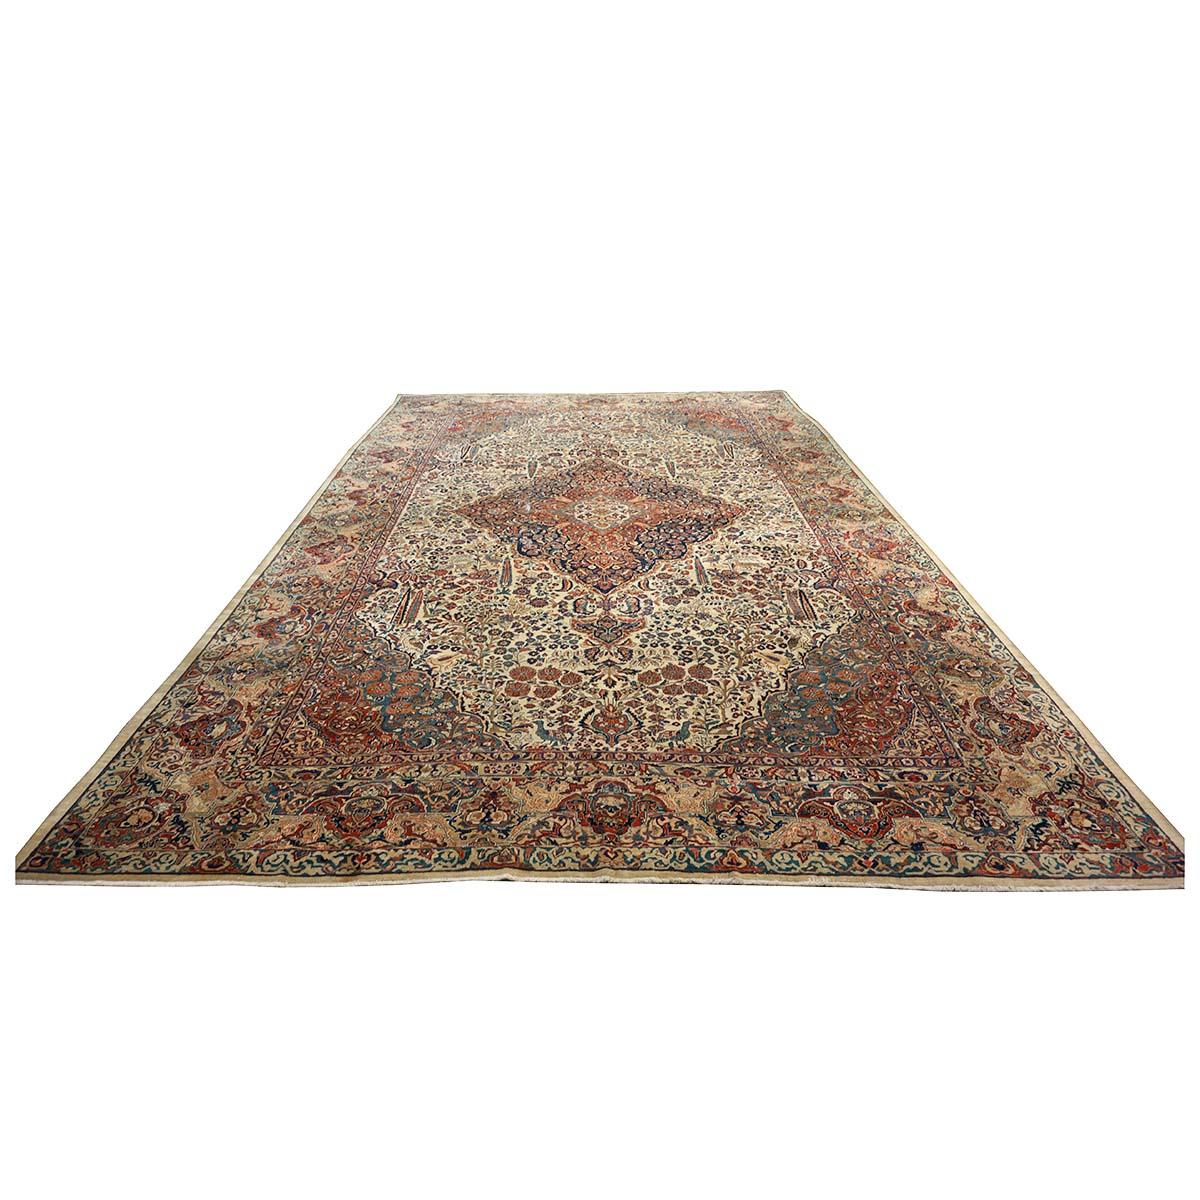 Ashly Fine Rugs präsentiert einen antiken persischen Sarouk Mahajaran 12x19 Teppich in Übergröße. Mahajaran-Sarouk-Teppiche wurden in der zentralpersischen Provinz Sultanabad (später Arak genannt) gewebt. Dieser 100 Jahre alte Teppich hat einen